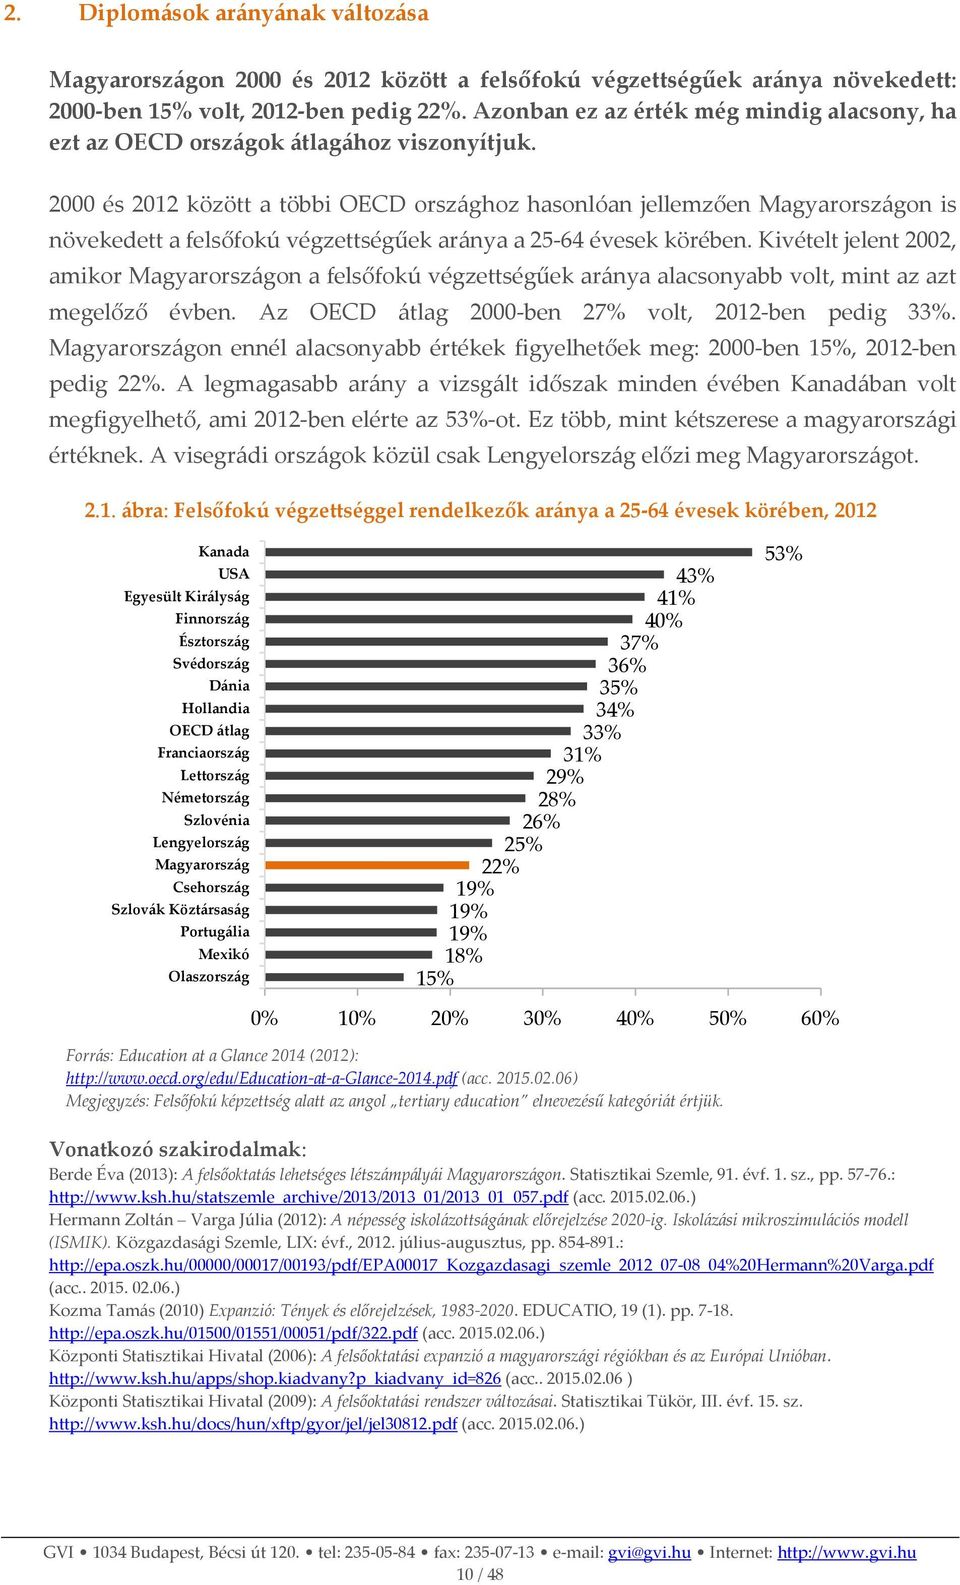 2000 és 2012 között a többi OECD országhoz hasonlóan jellemzően Magyarországon is növekedett a felsőfokú végzettségűek aránya a 25-64 évesek körében.